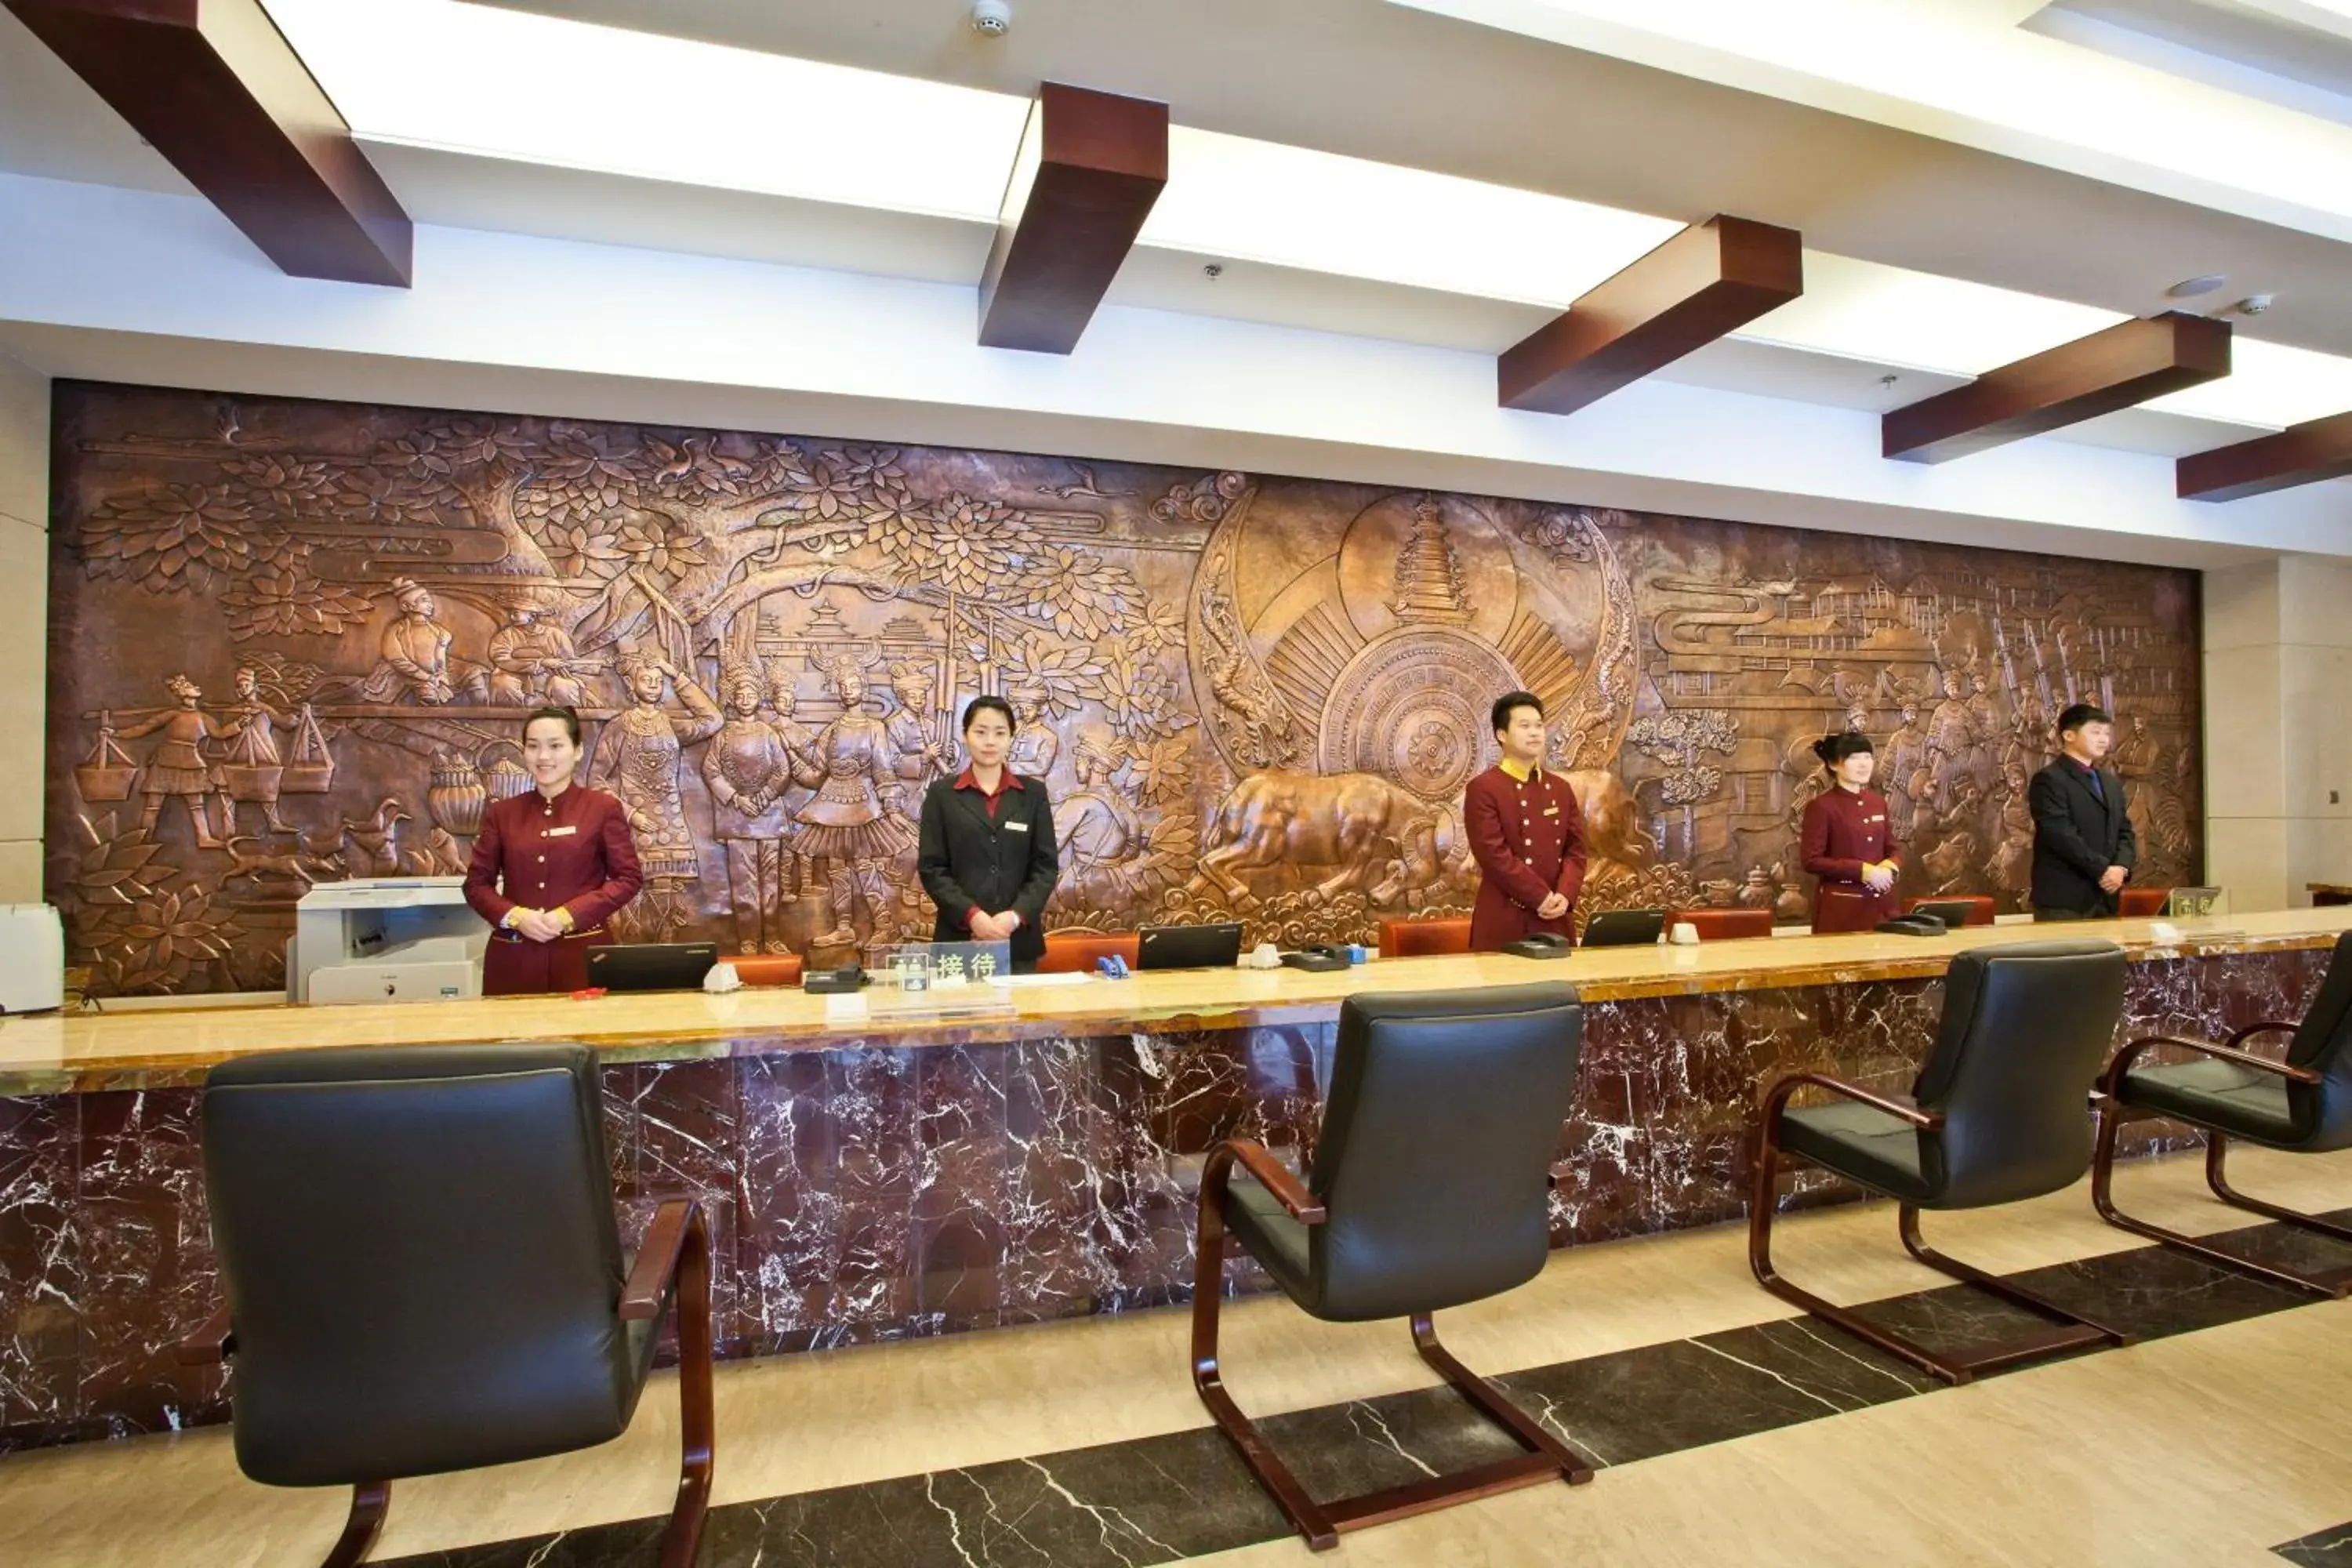 Lobby or reception in Beijing Guizhou Hotel